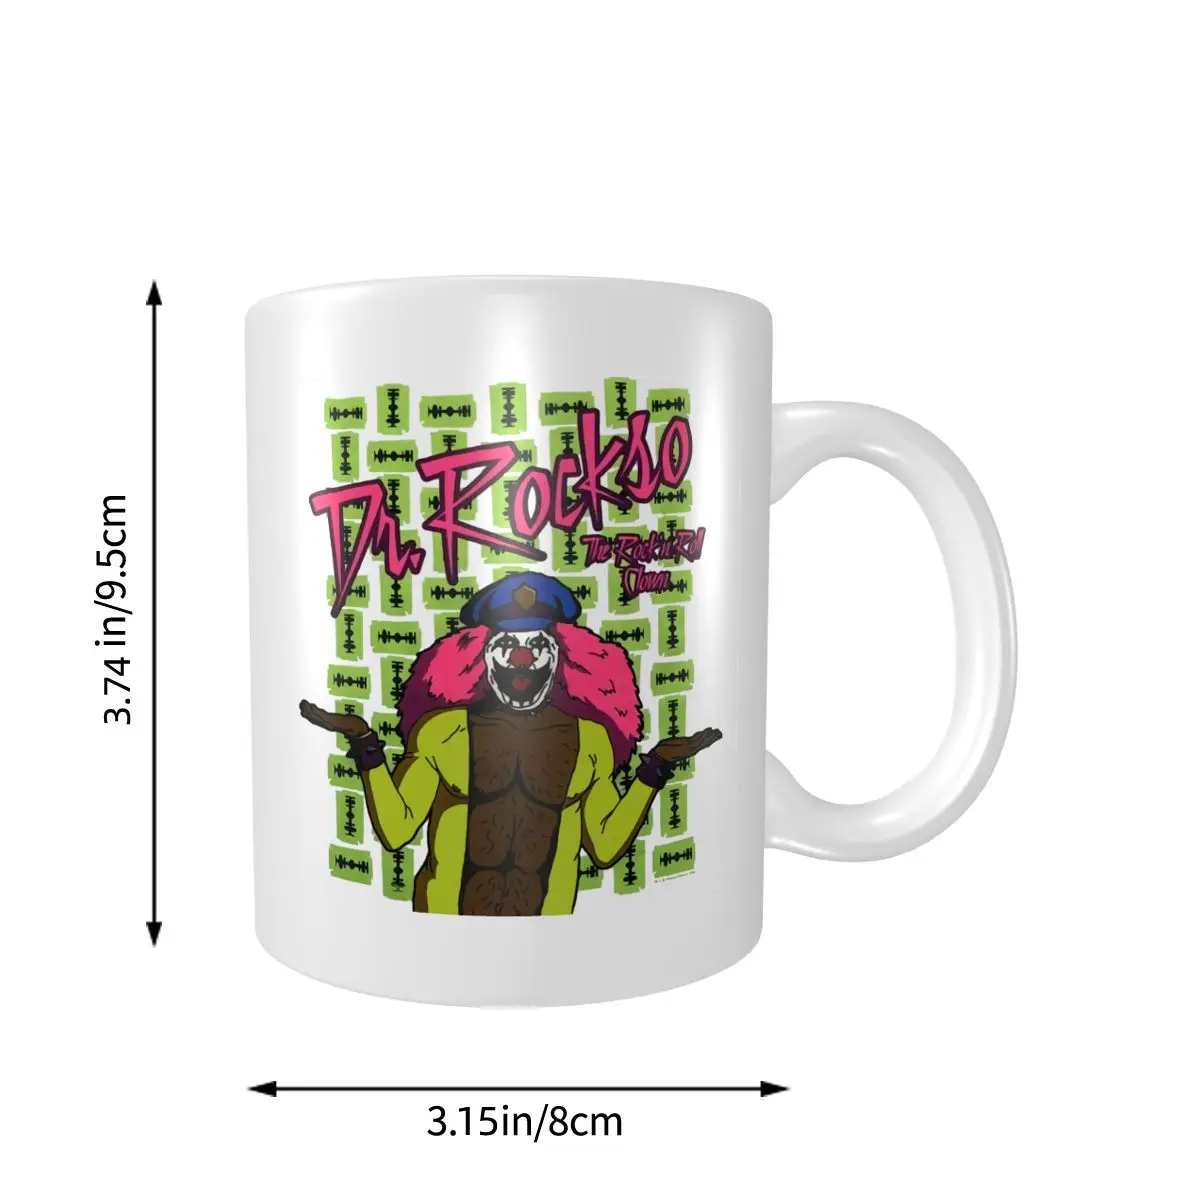 Cool Ninja Coffee or Tea Mug Ceramic Mug 11oz 